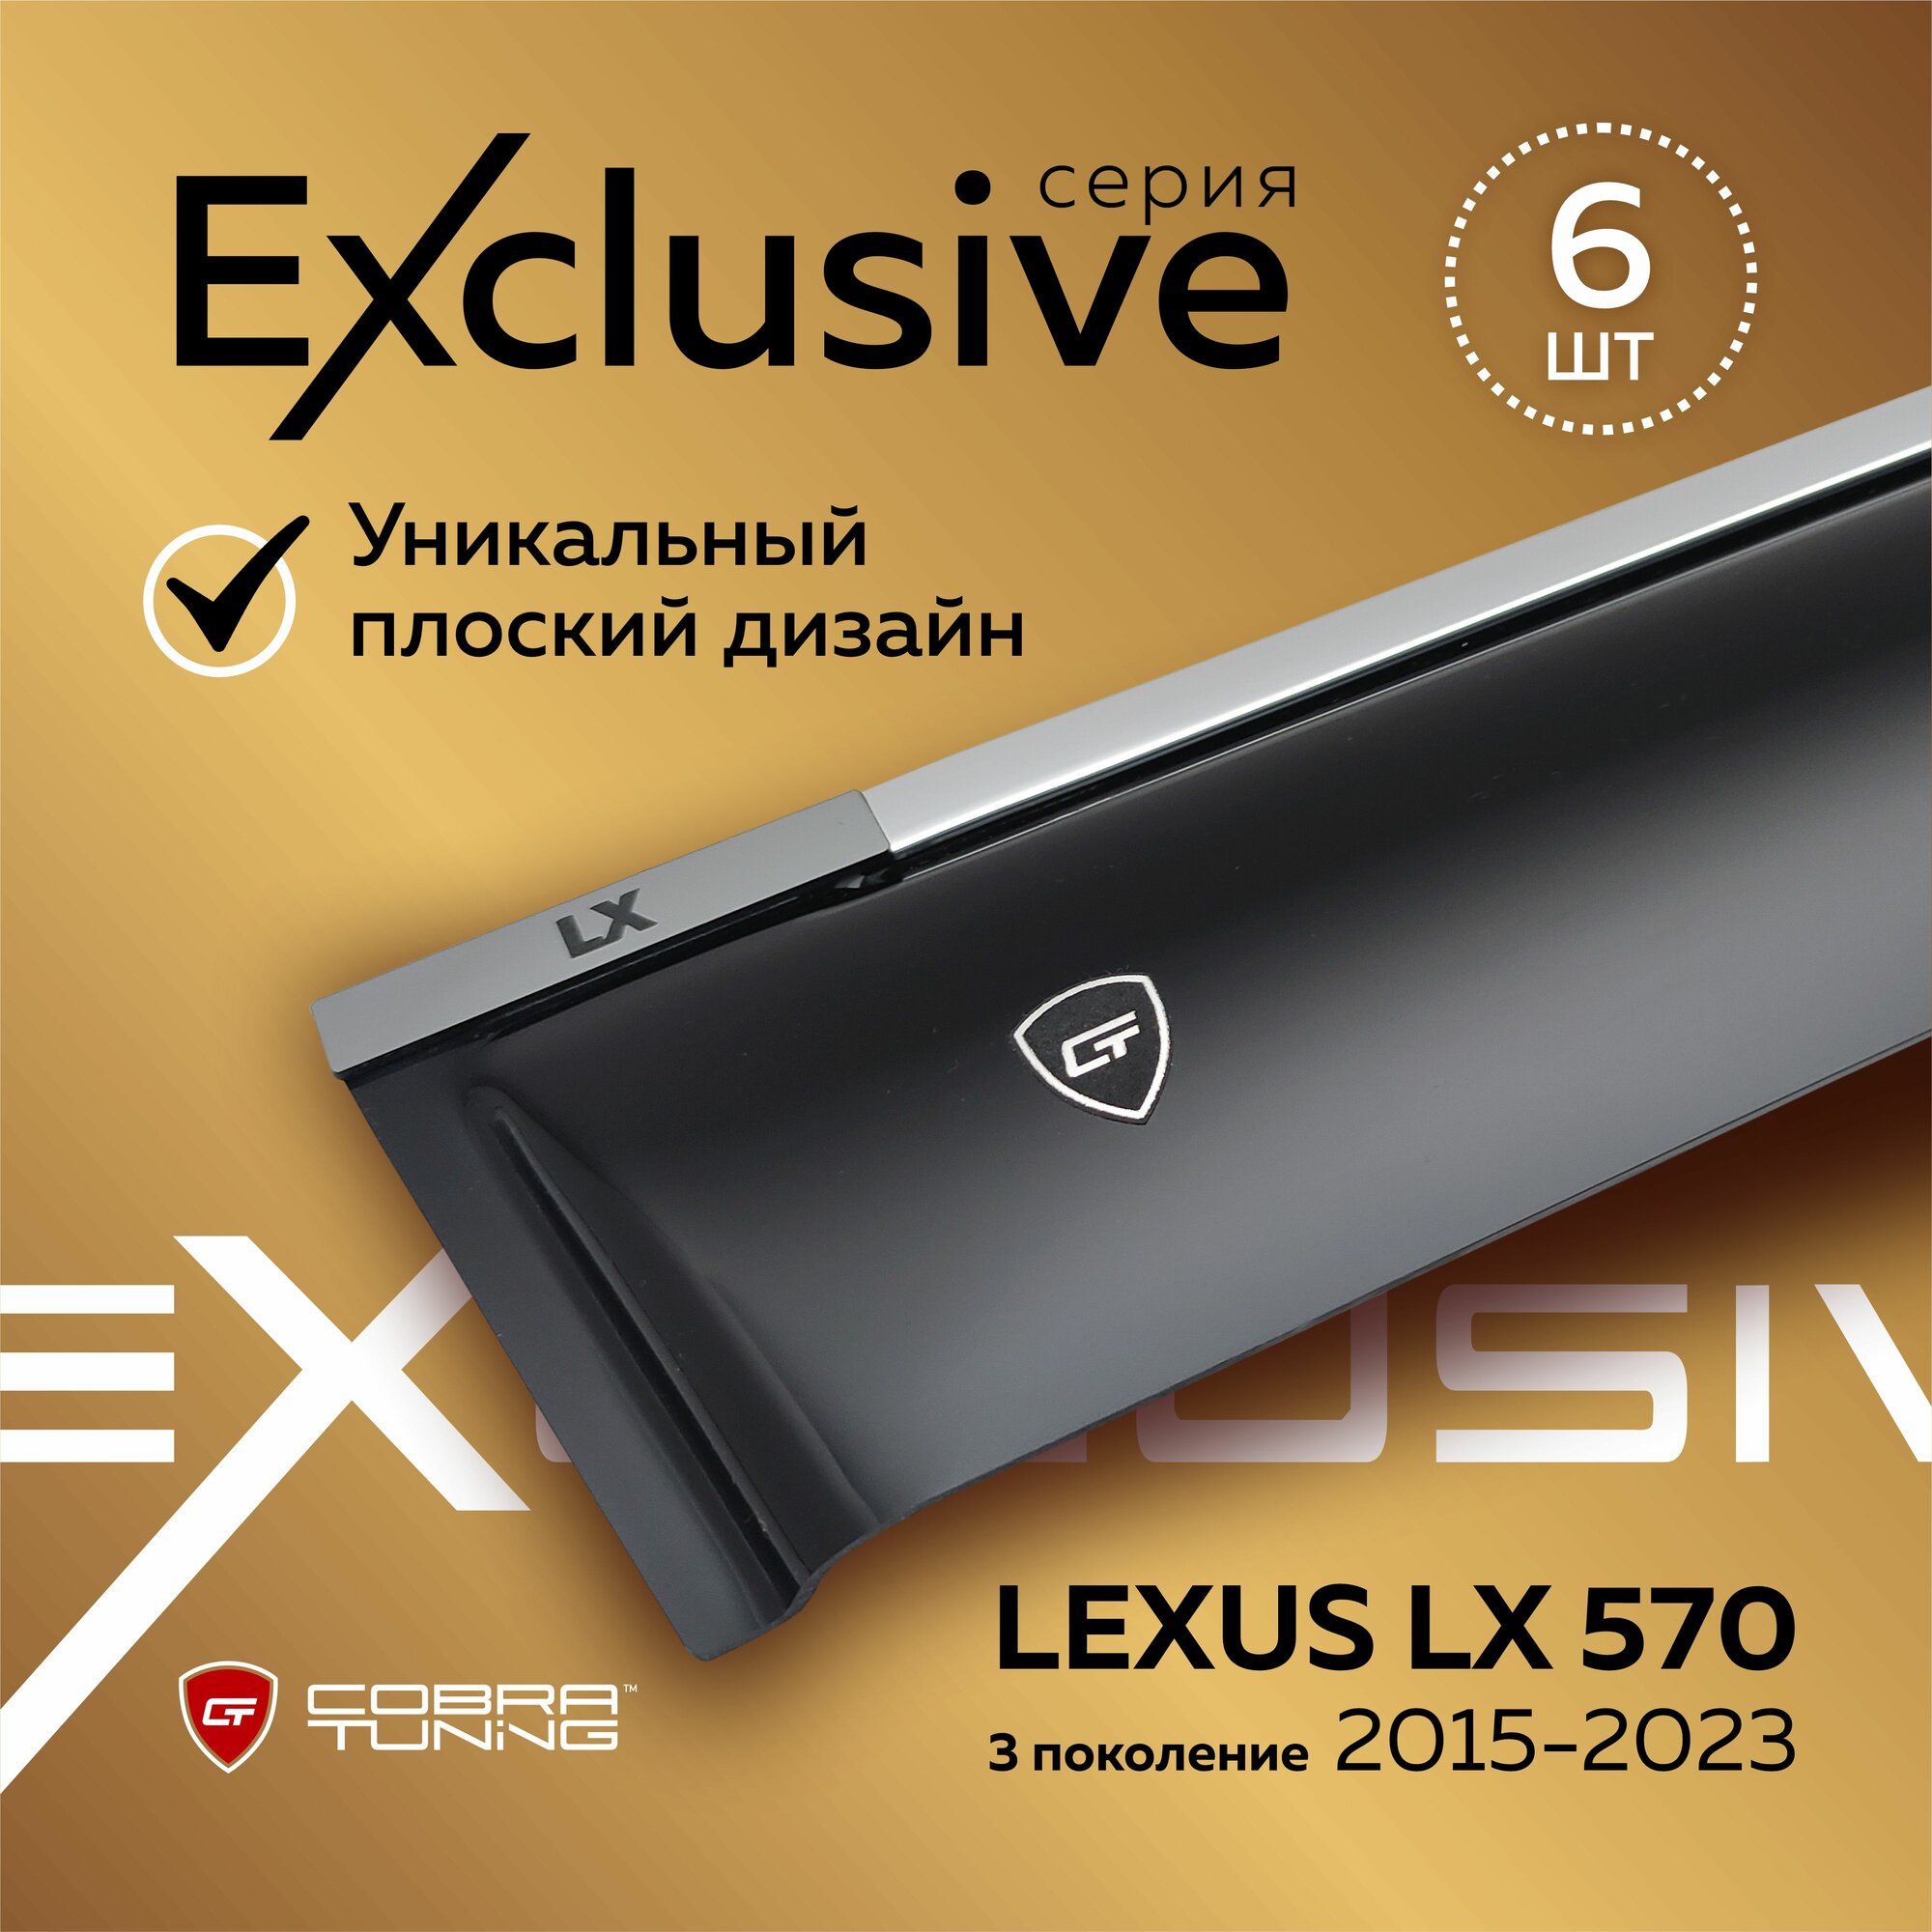 Дефлекторы боковых окон серия "Exclusive" для автомобиля Lexus LX 570 (Лексус Лх) J200, 3 поколение с 2015 по 2023, ветровики с хром молдингом, полный комплект с уголками, 6 частей, Cobra Tuning